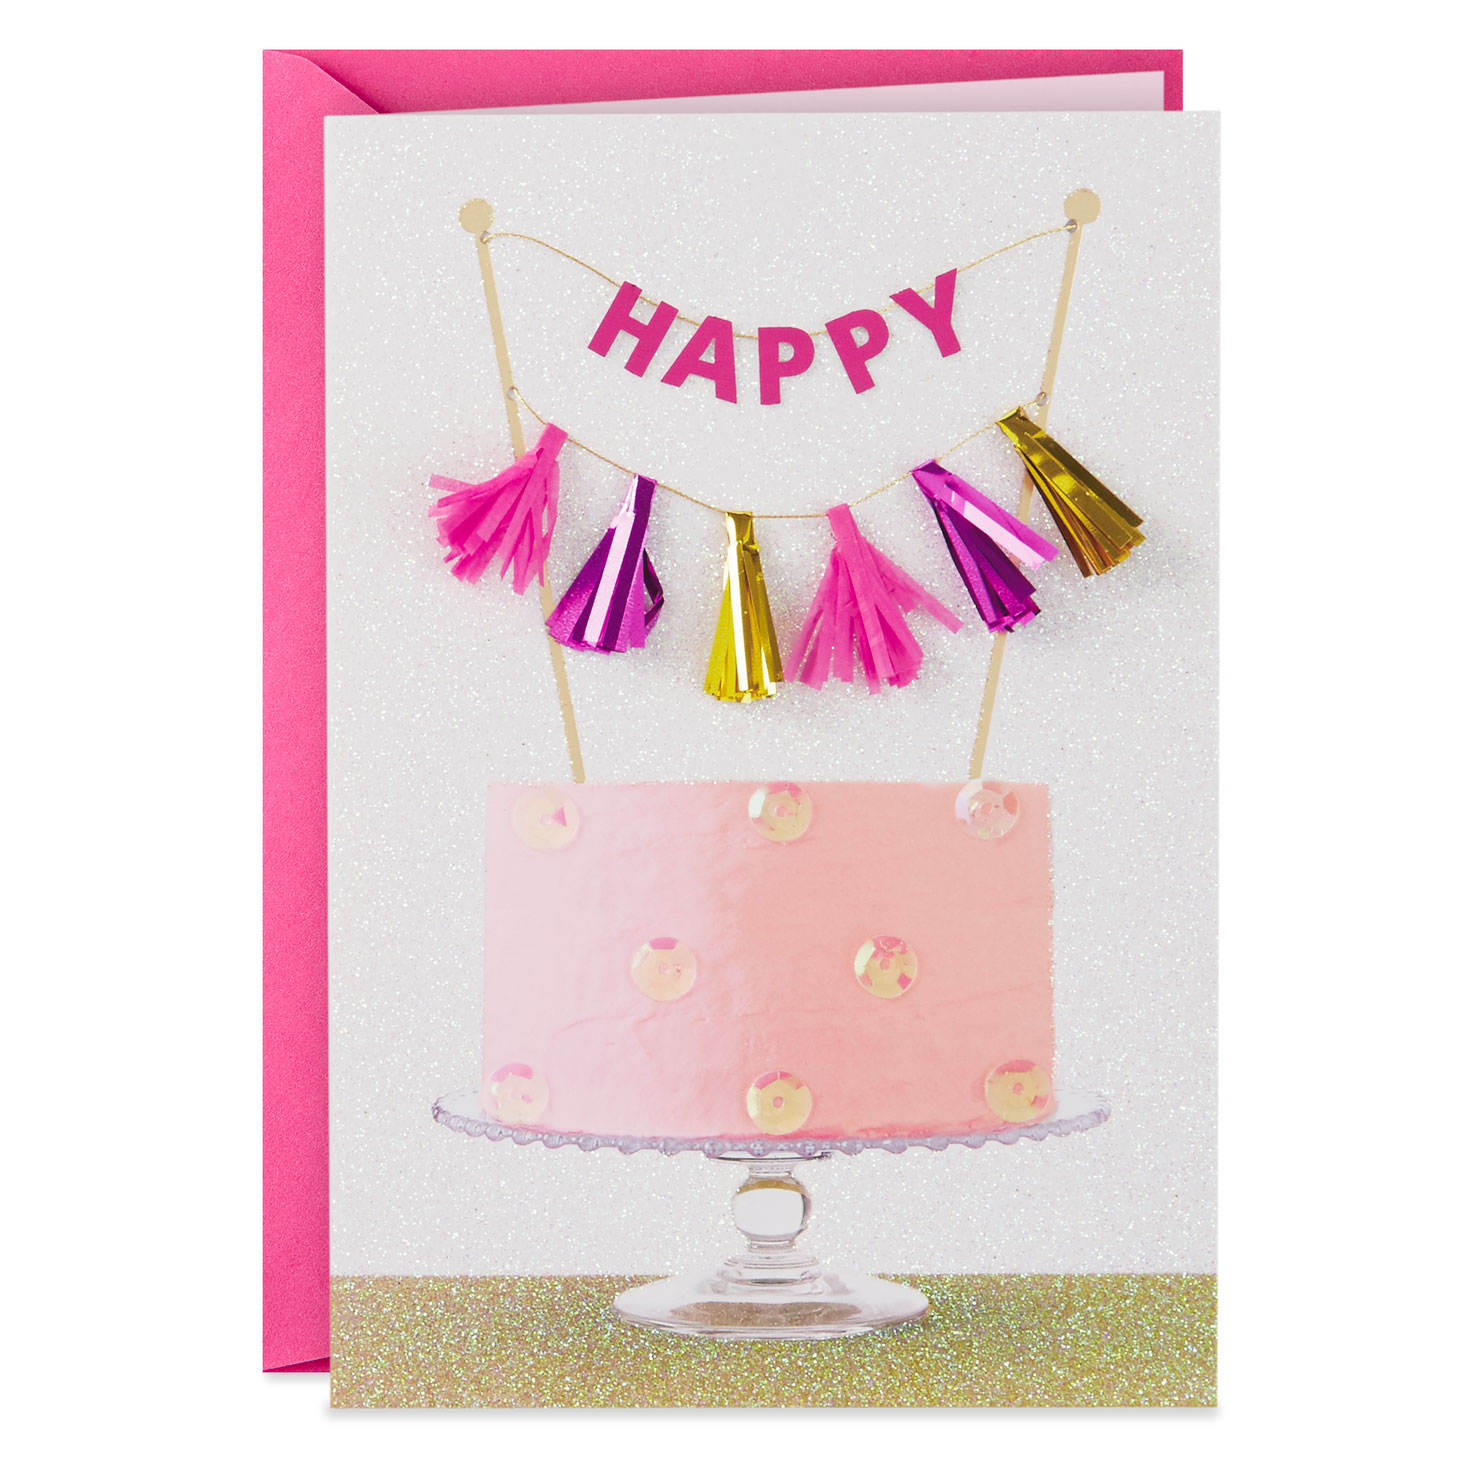 Medium Hallmark 10th Birthday Card Yappy Birthday 